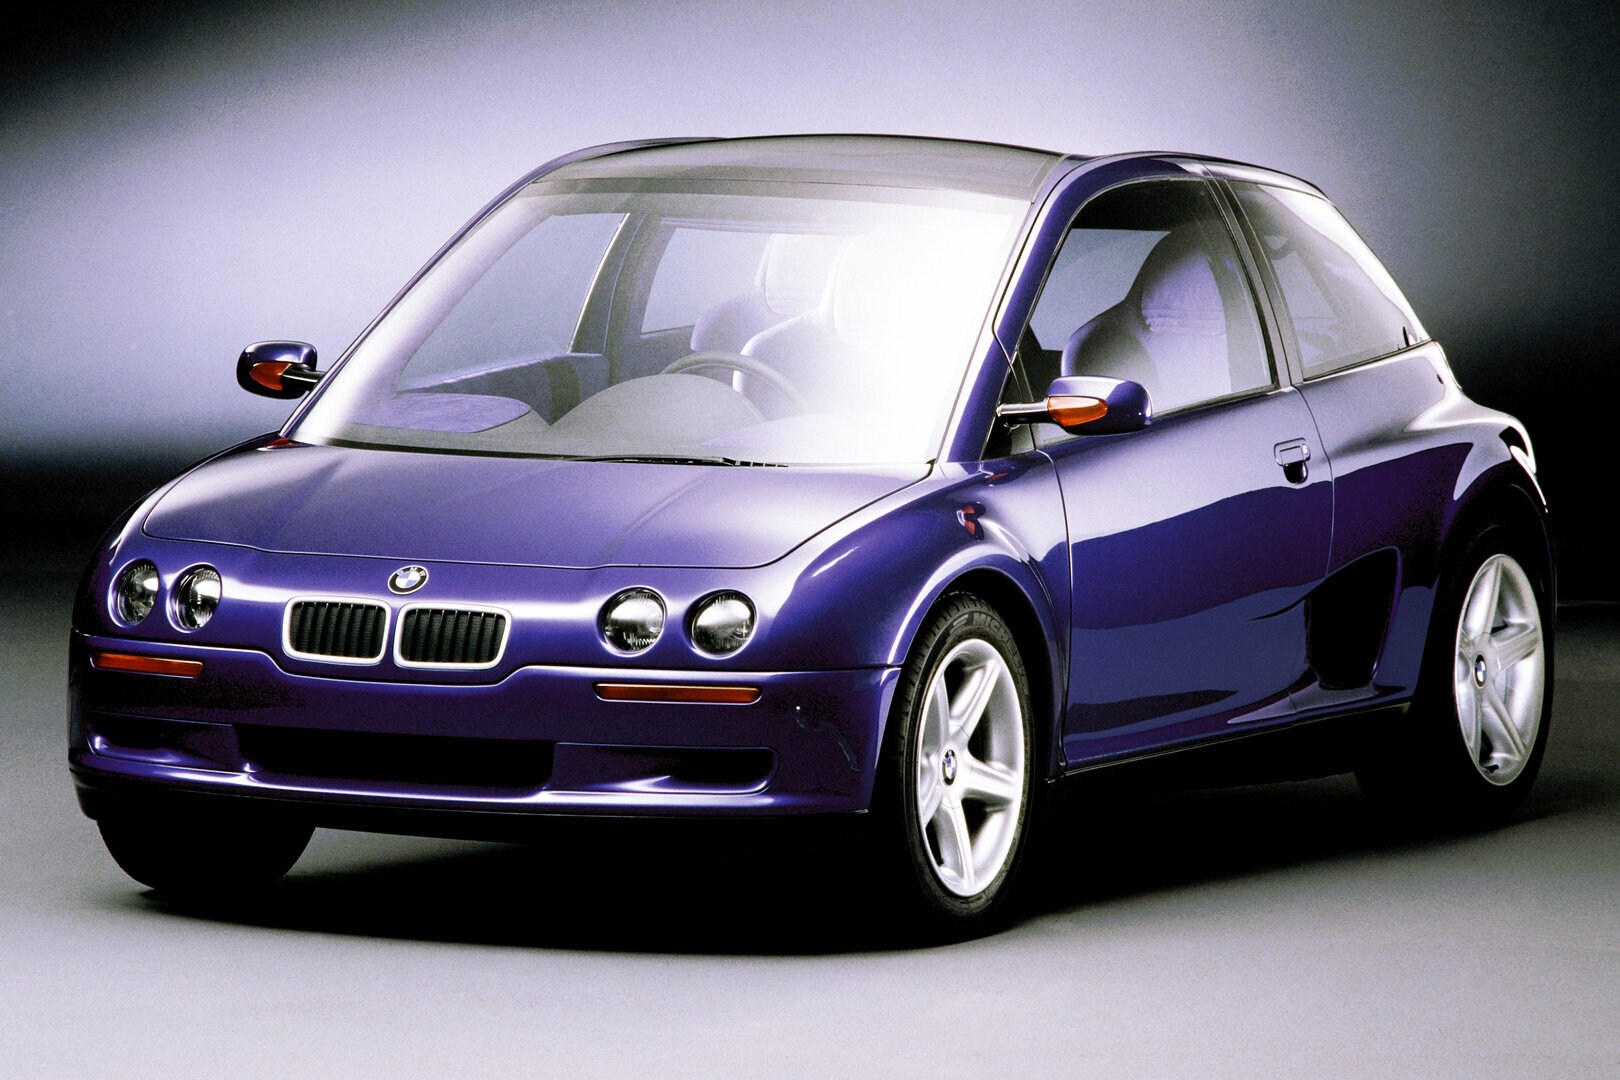 Coche del día: BMW Z13 Concept